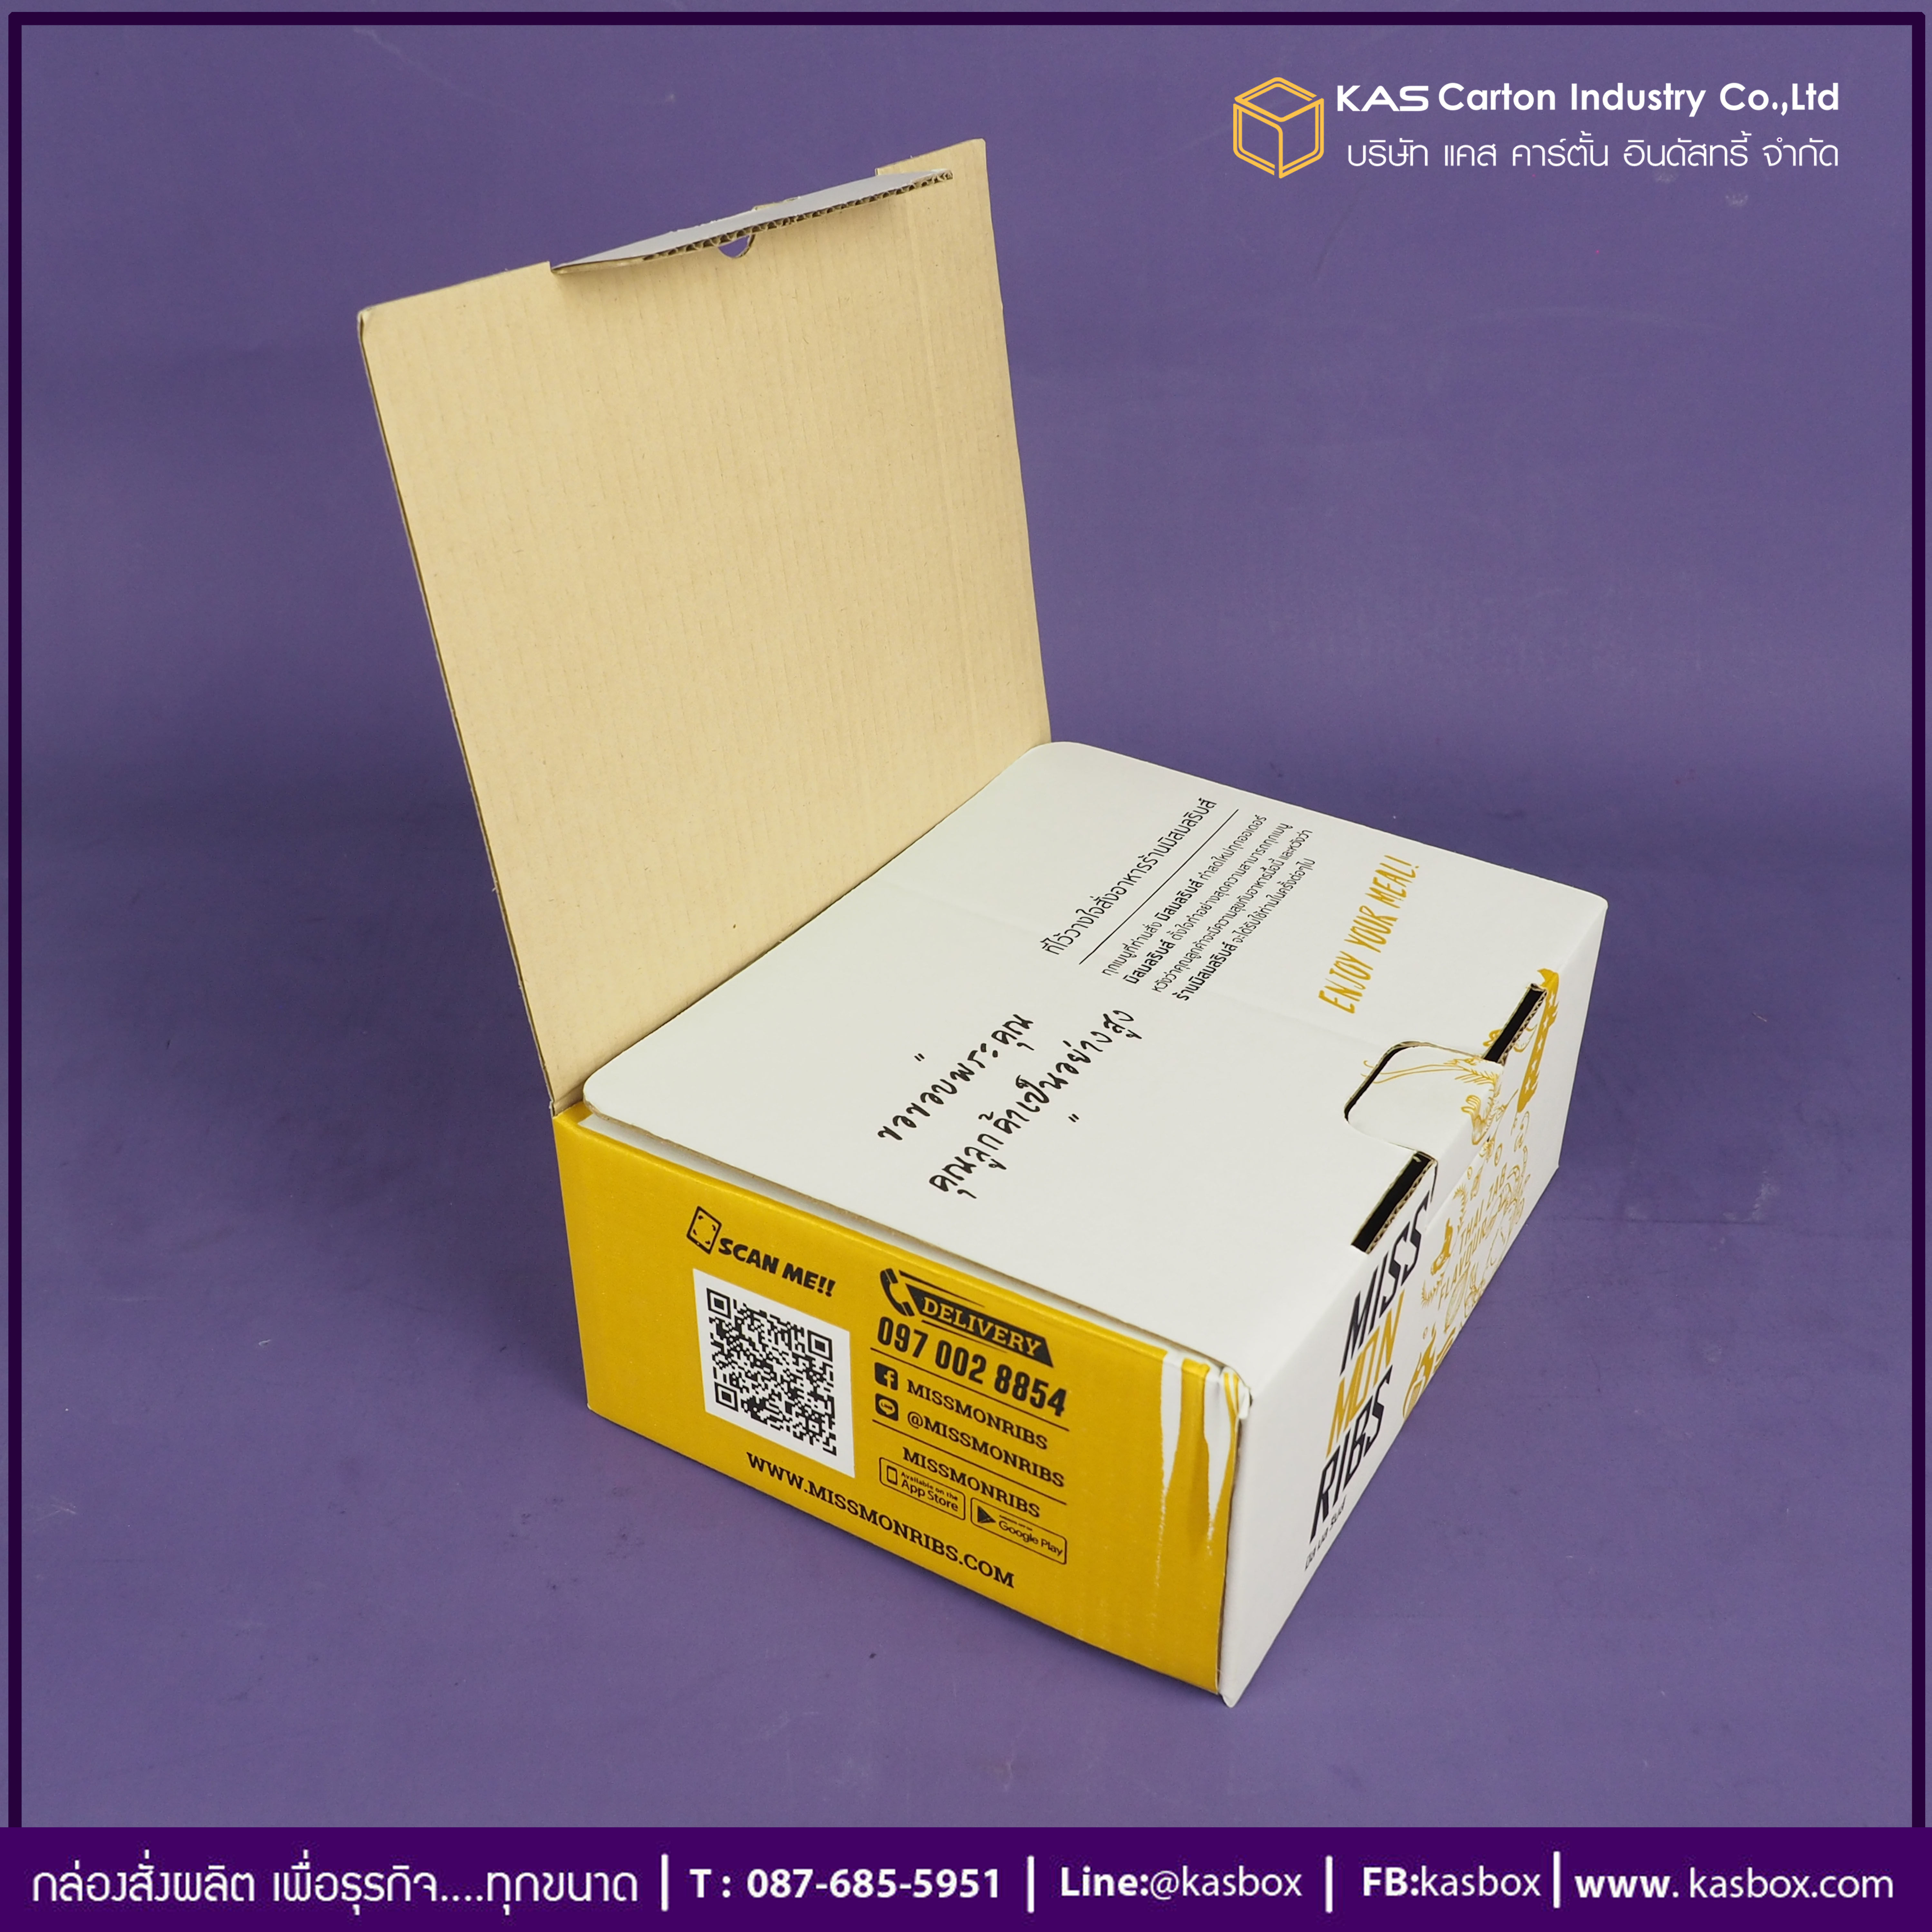 กล่องลูกฟูก สำเร็จรูป และ สั่งผลิต ตามความต้องการลูกค้า กล่องลูกฟูก SME กล่องไปรษณีย์ Delivery ใส่ซี่โครงหมูอบ Miss Mon Ribs